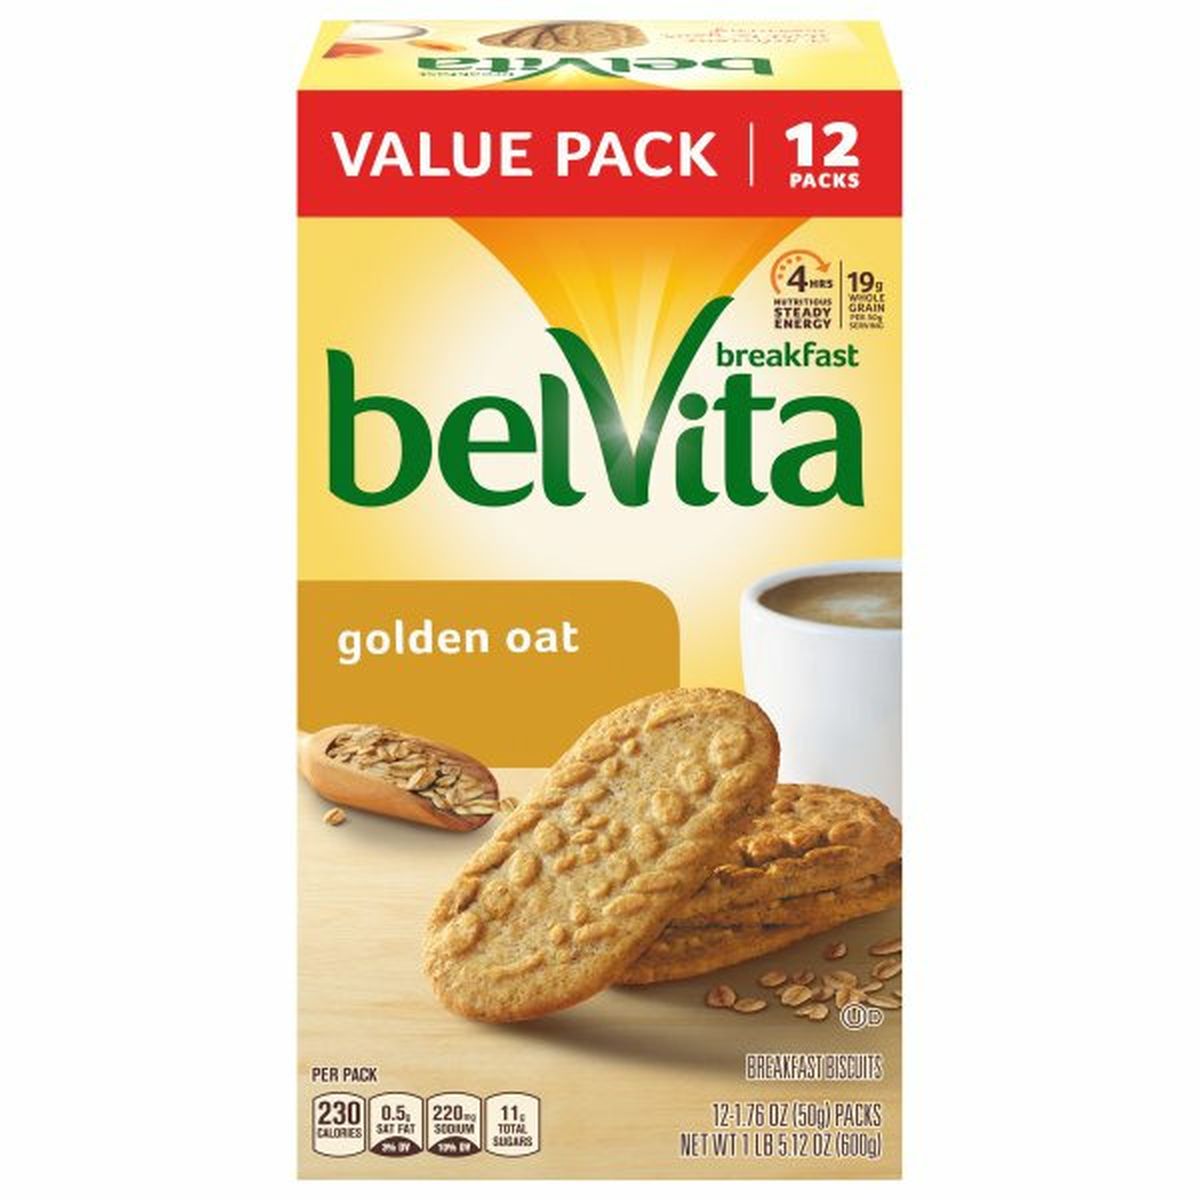 Calories in belVita Breakfast Biscuits, Golden Oat, Value Pack